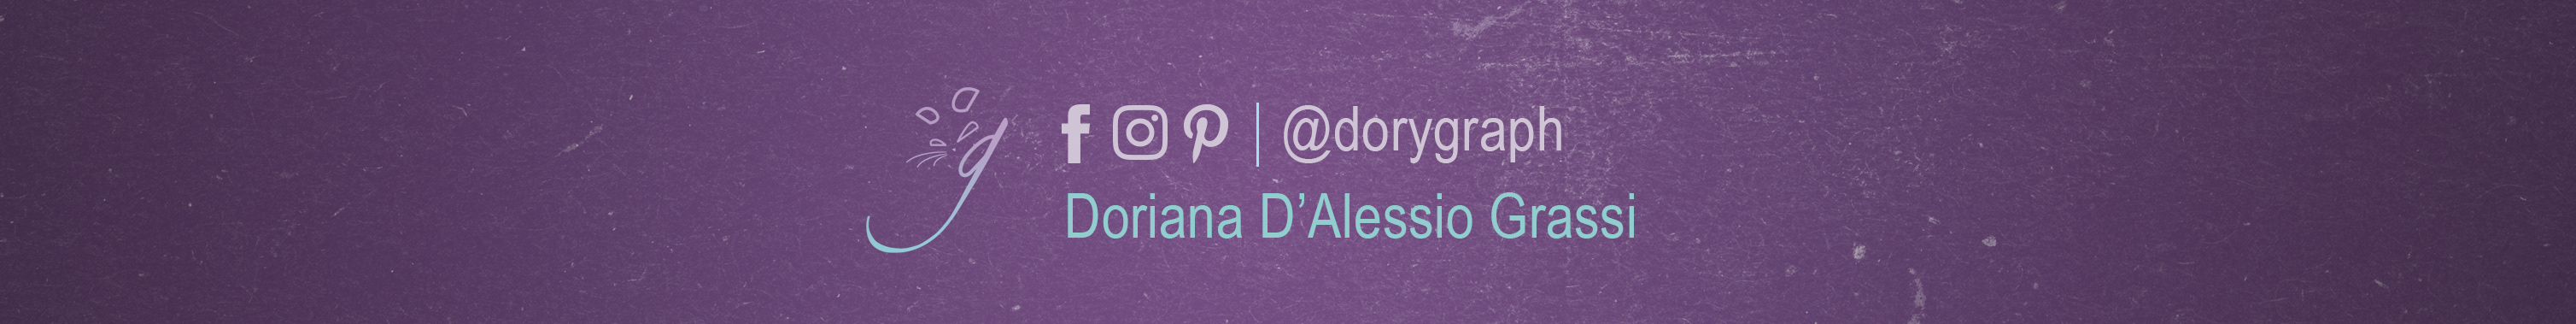 Doriana D'Alessio Grassis profilbanner